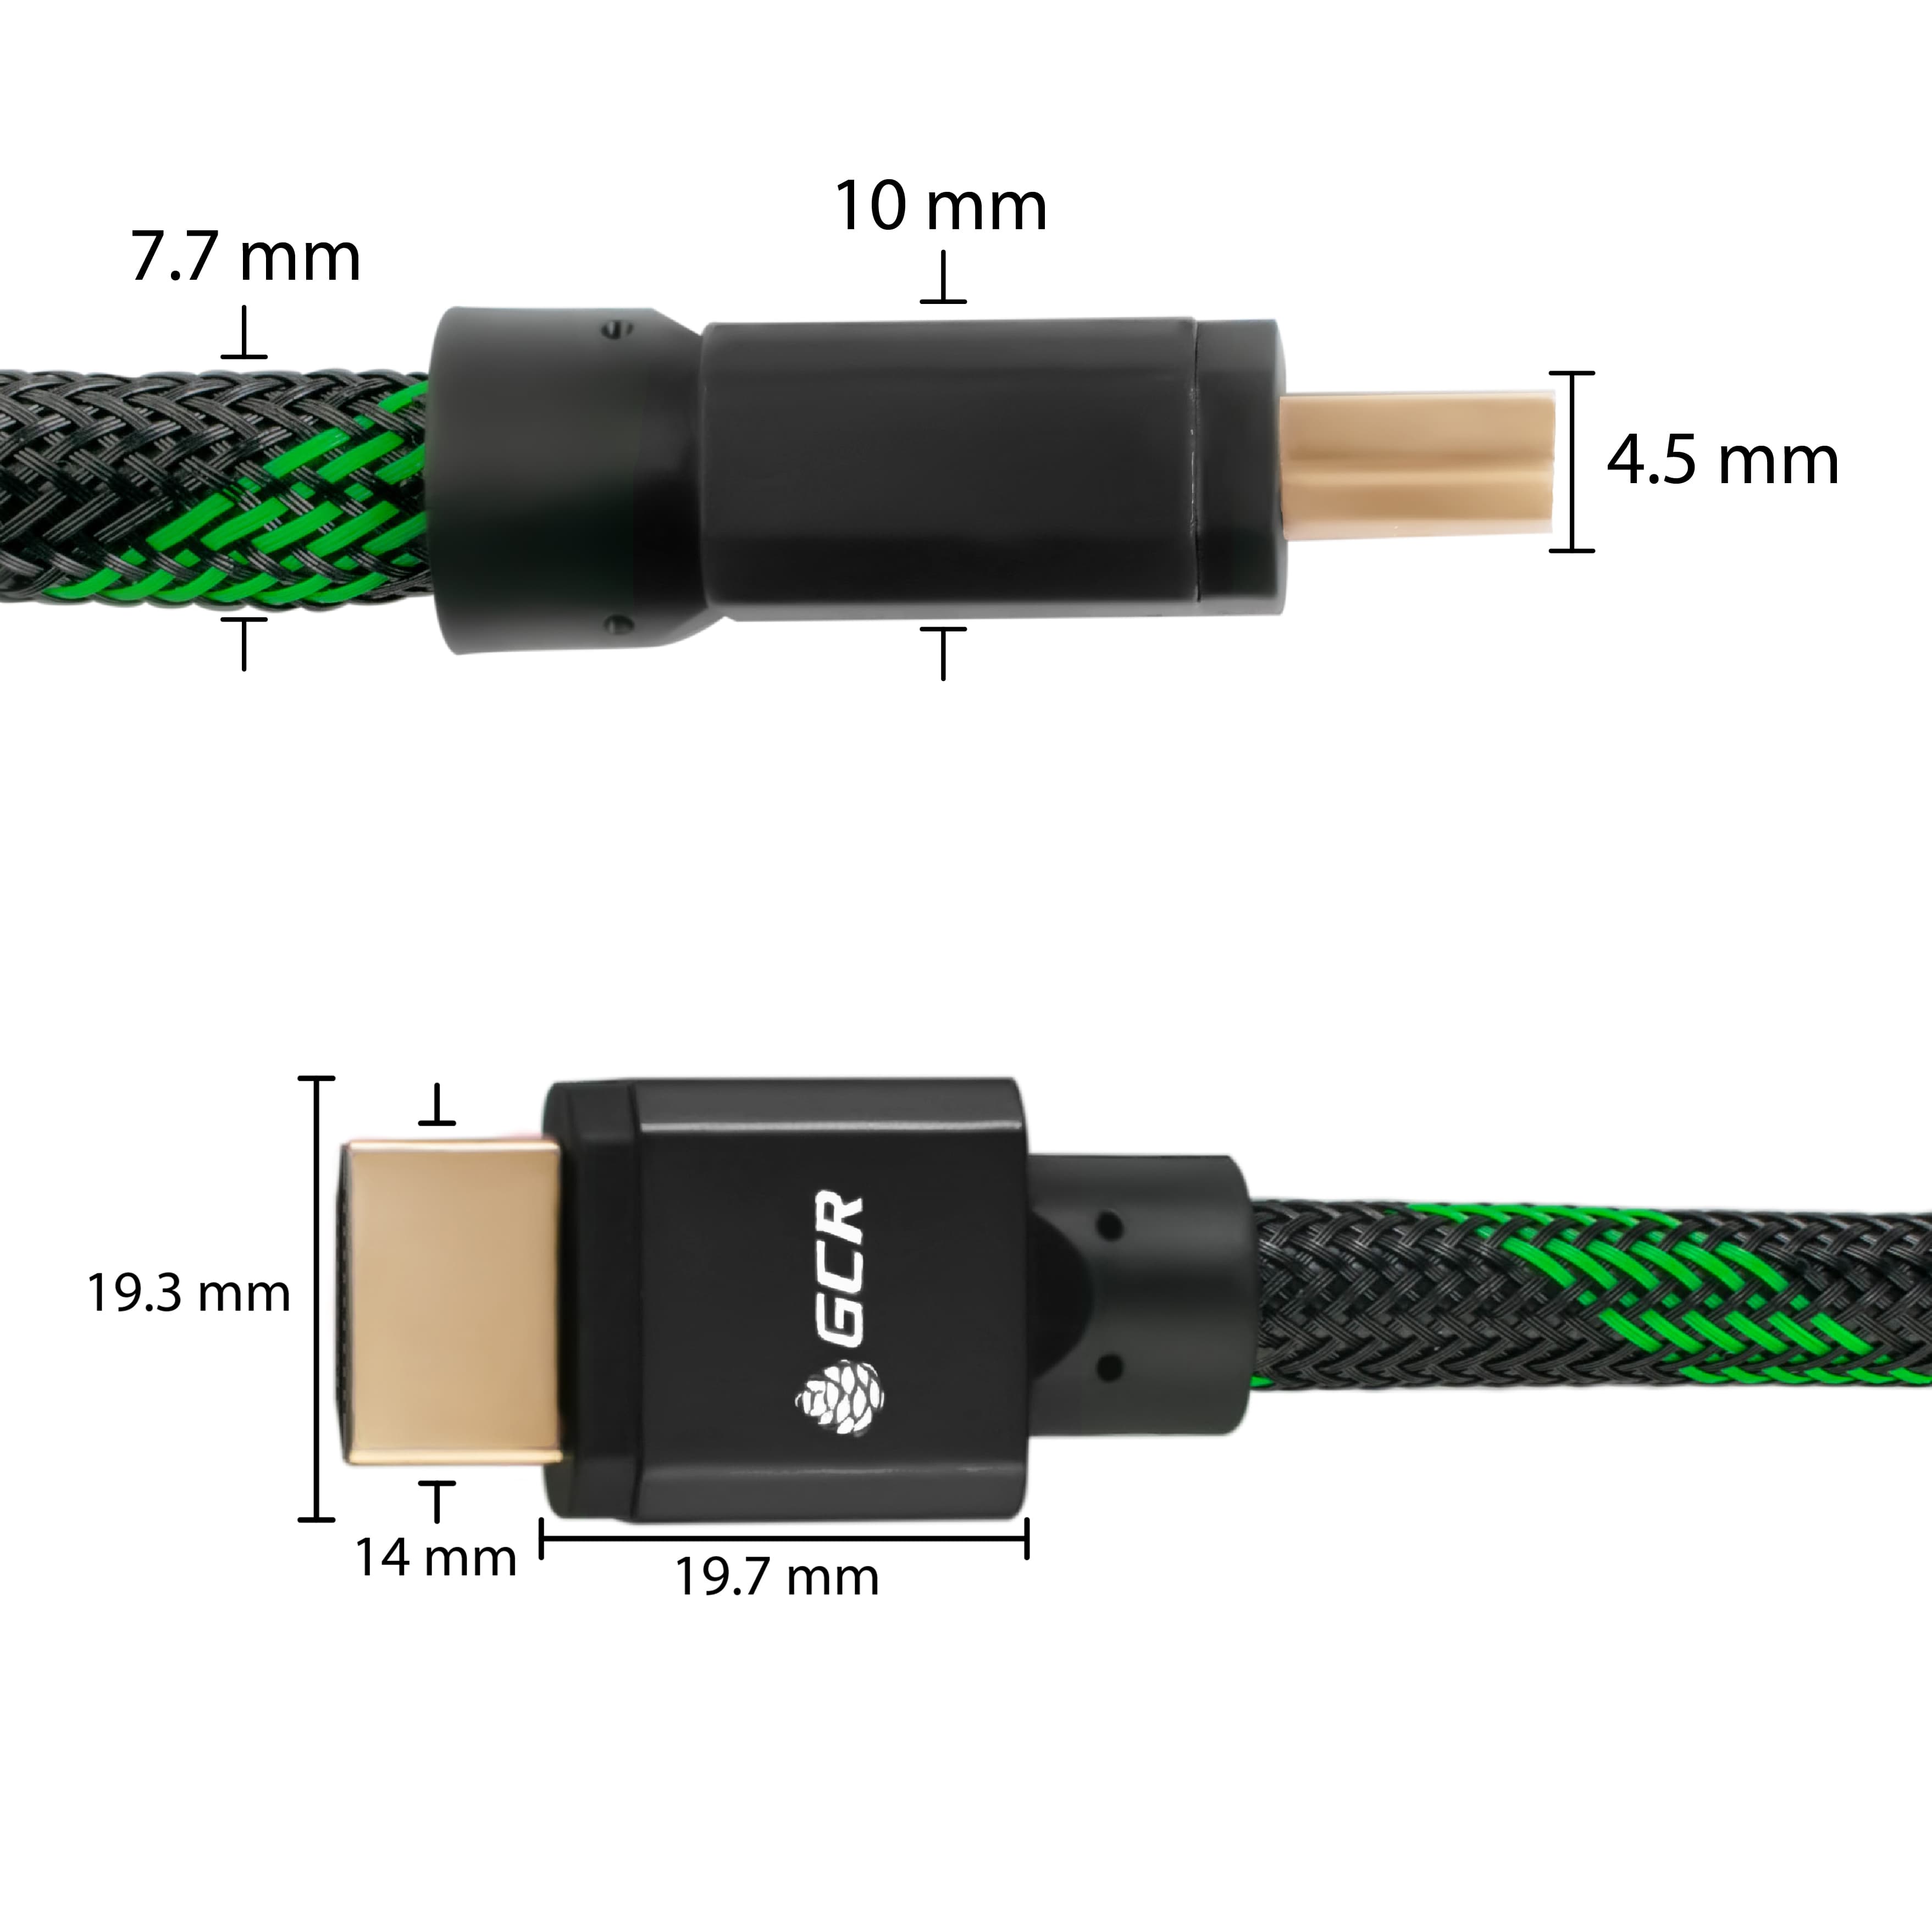 Кабель HDMI 2.1 8K 60Hz 4K 144Hz 48 Гбит/с для PS4 Xbox One Smart TV ферритовые фильтры 24K GOLD